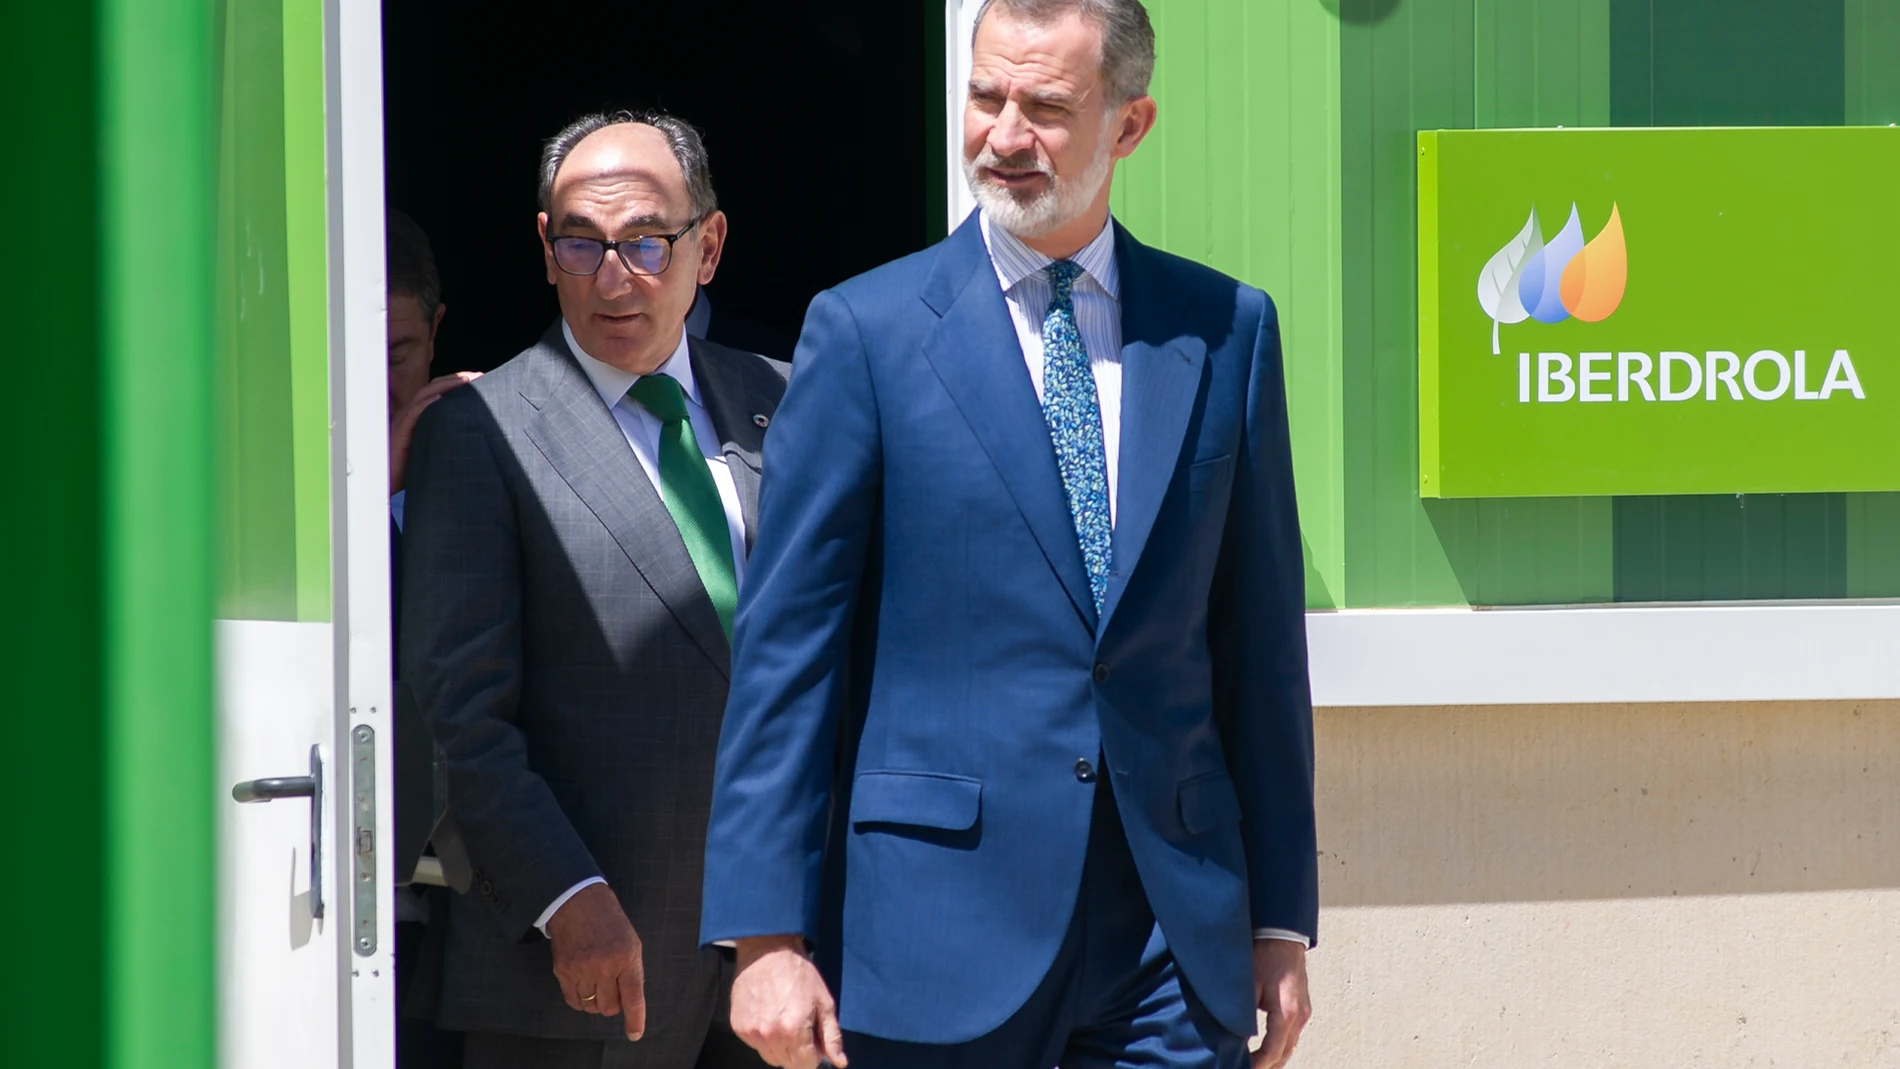 El rey Felipe junto al presidente de Iberdrola, Ignacio Galán, durante la inauguración de la planta de hidrógeno verde de la compañía en Puertollano